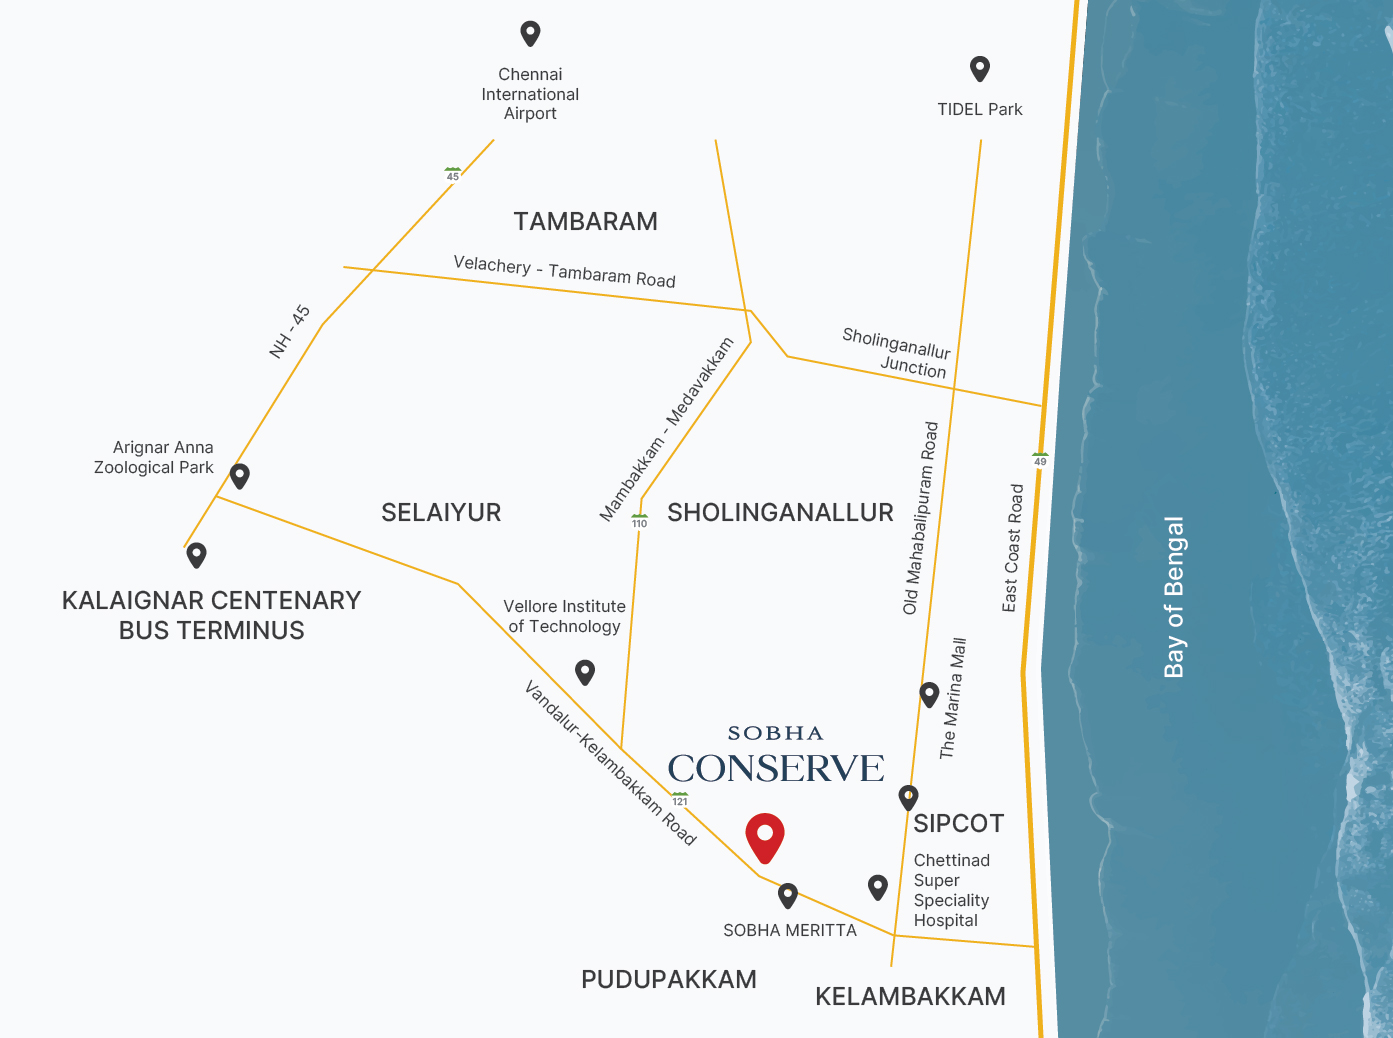 SOBHA-Conserve-location-map-v2